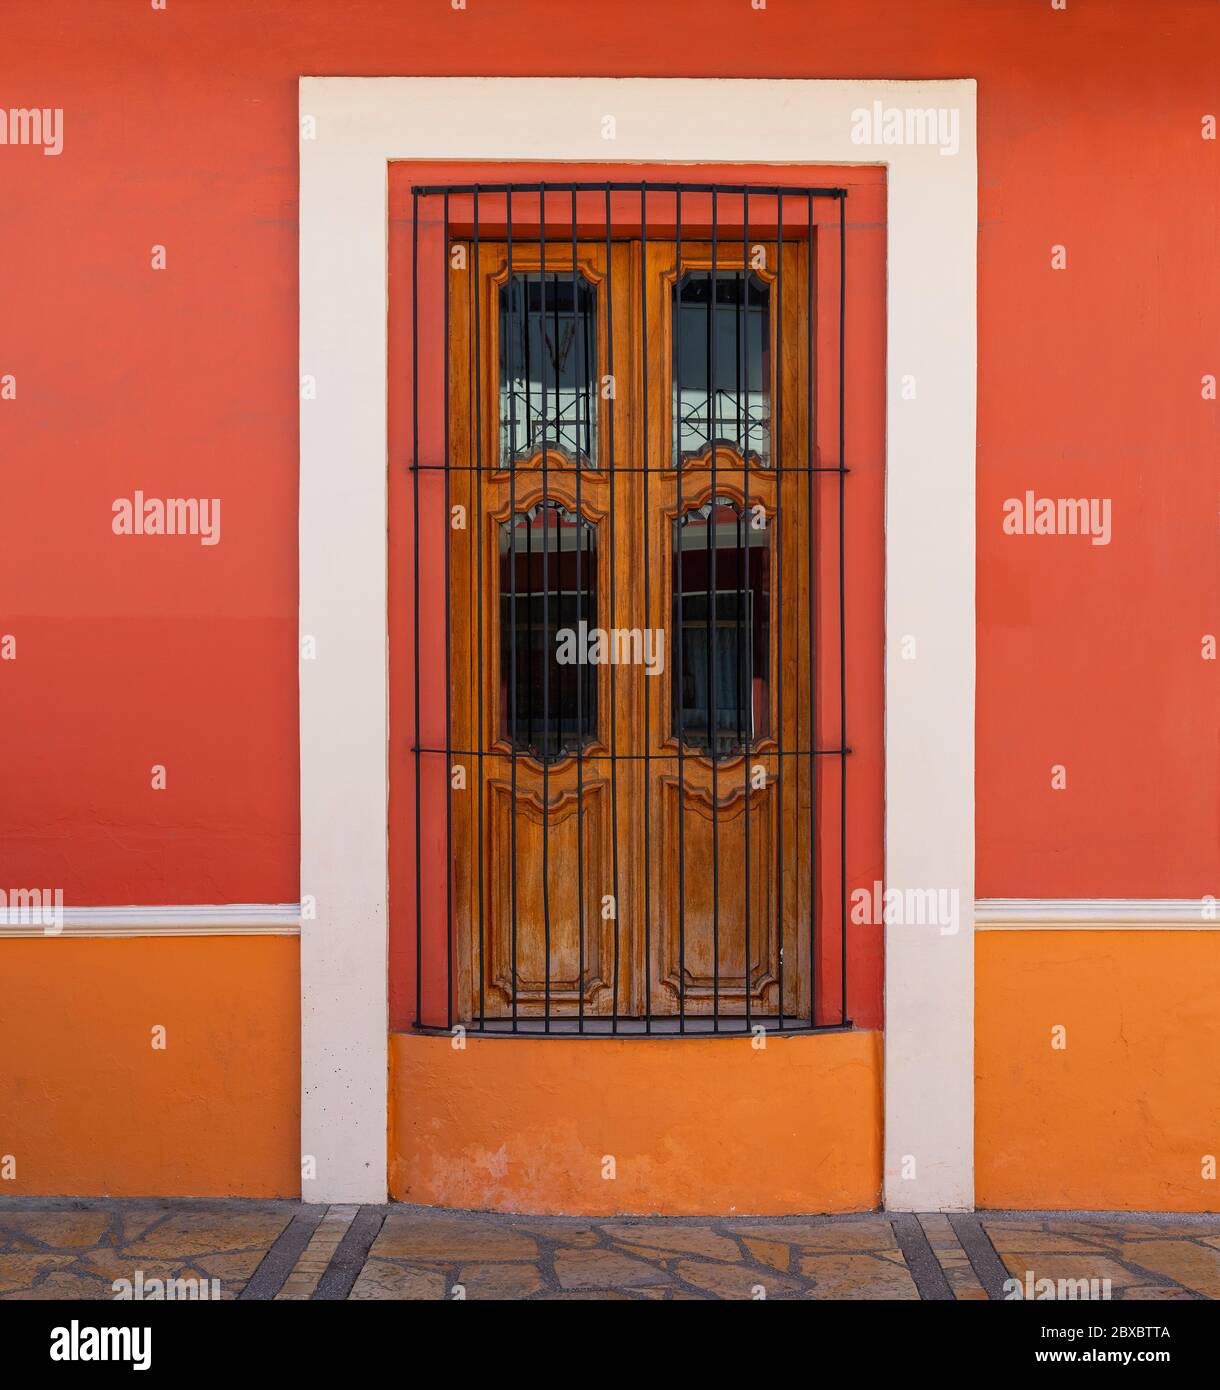 Colorful colonial style facade with window, San Cristobal de las Casas, Chiapas, Mexico. Stock Photo